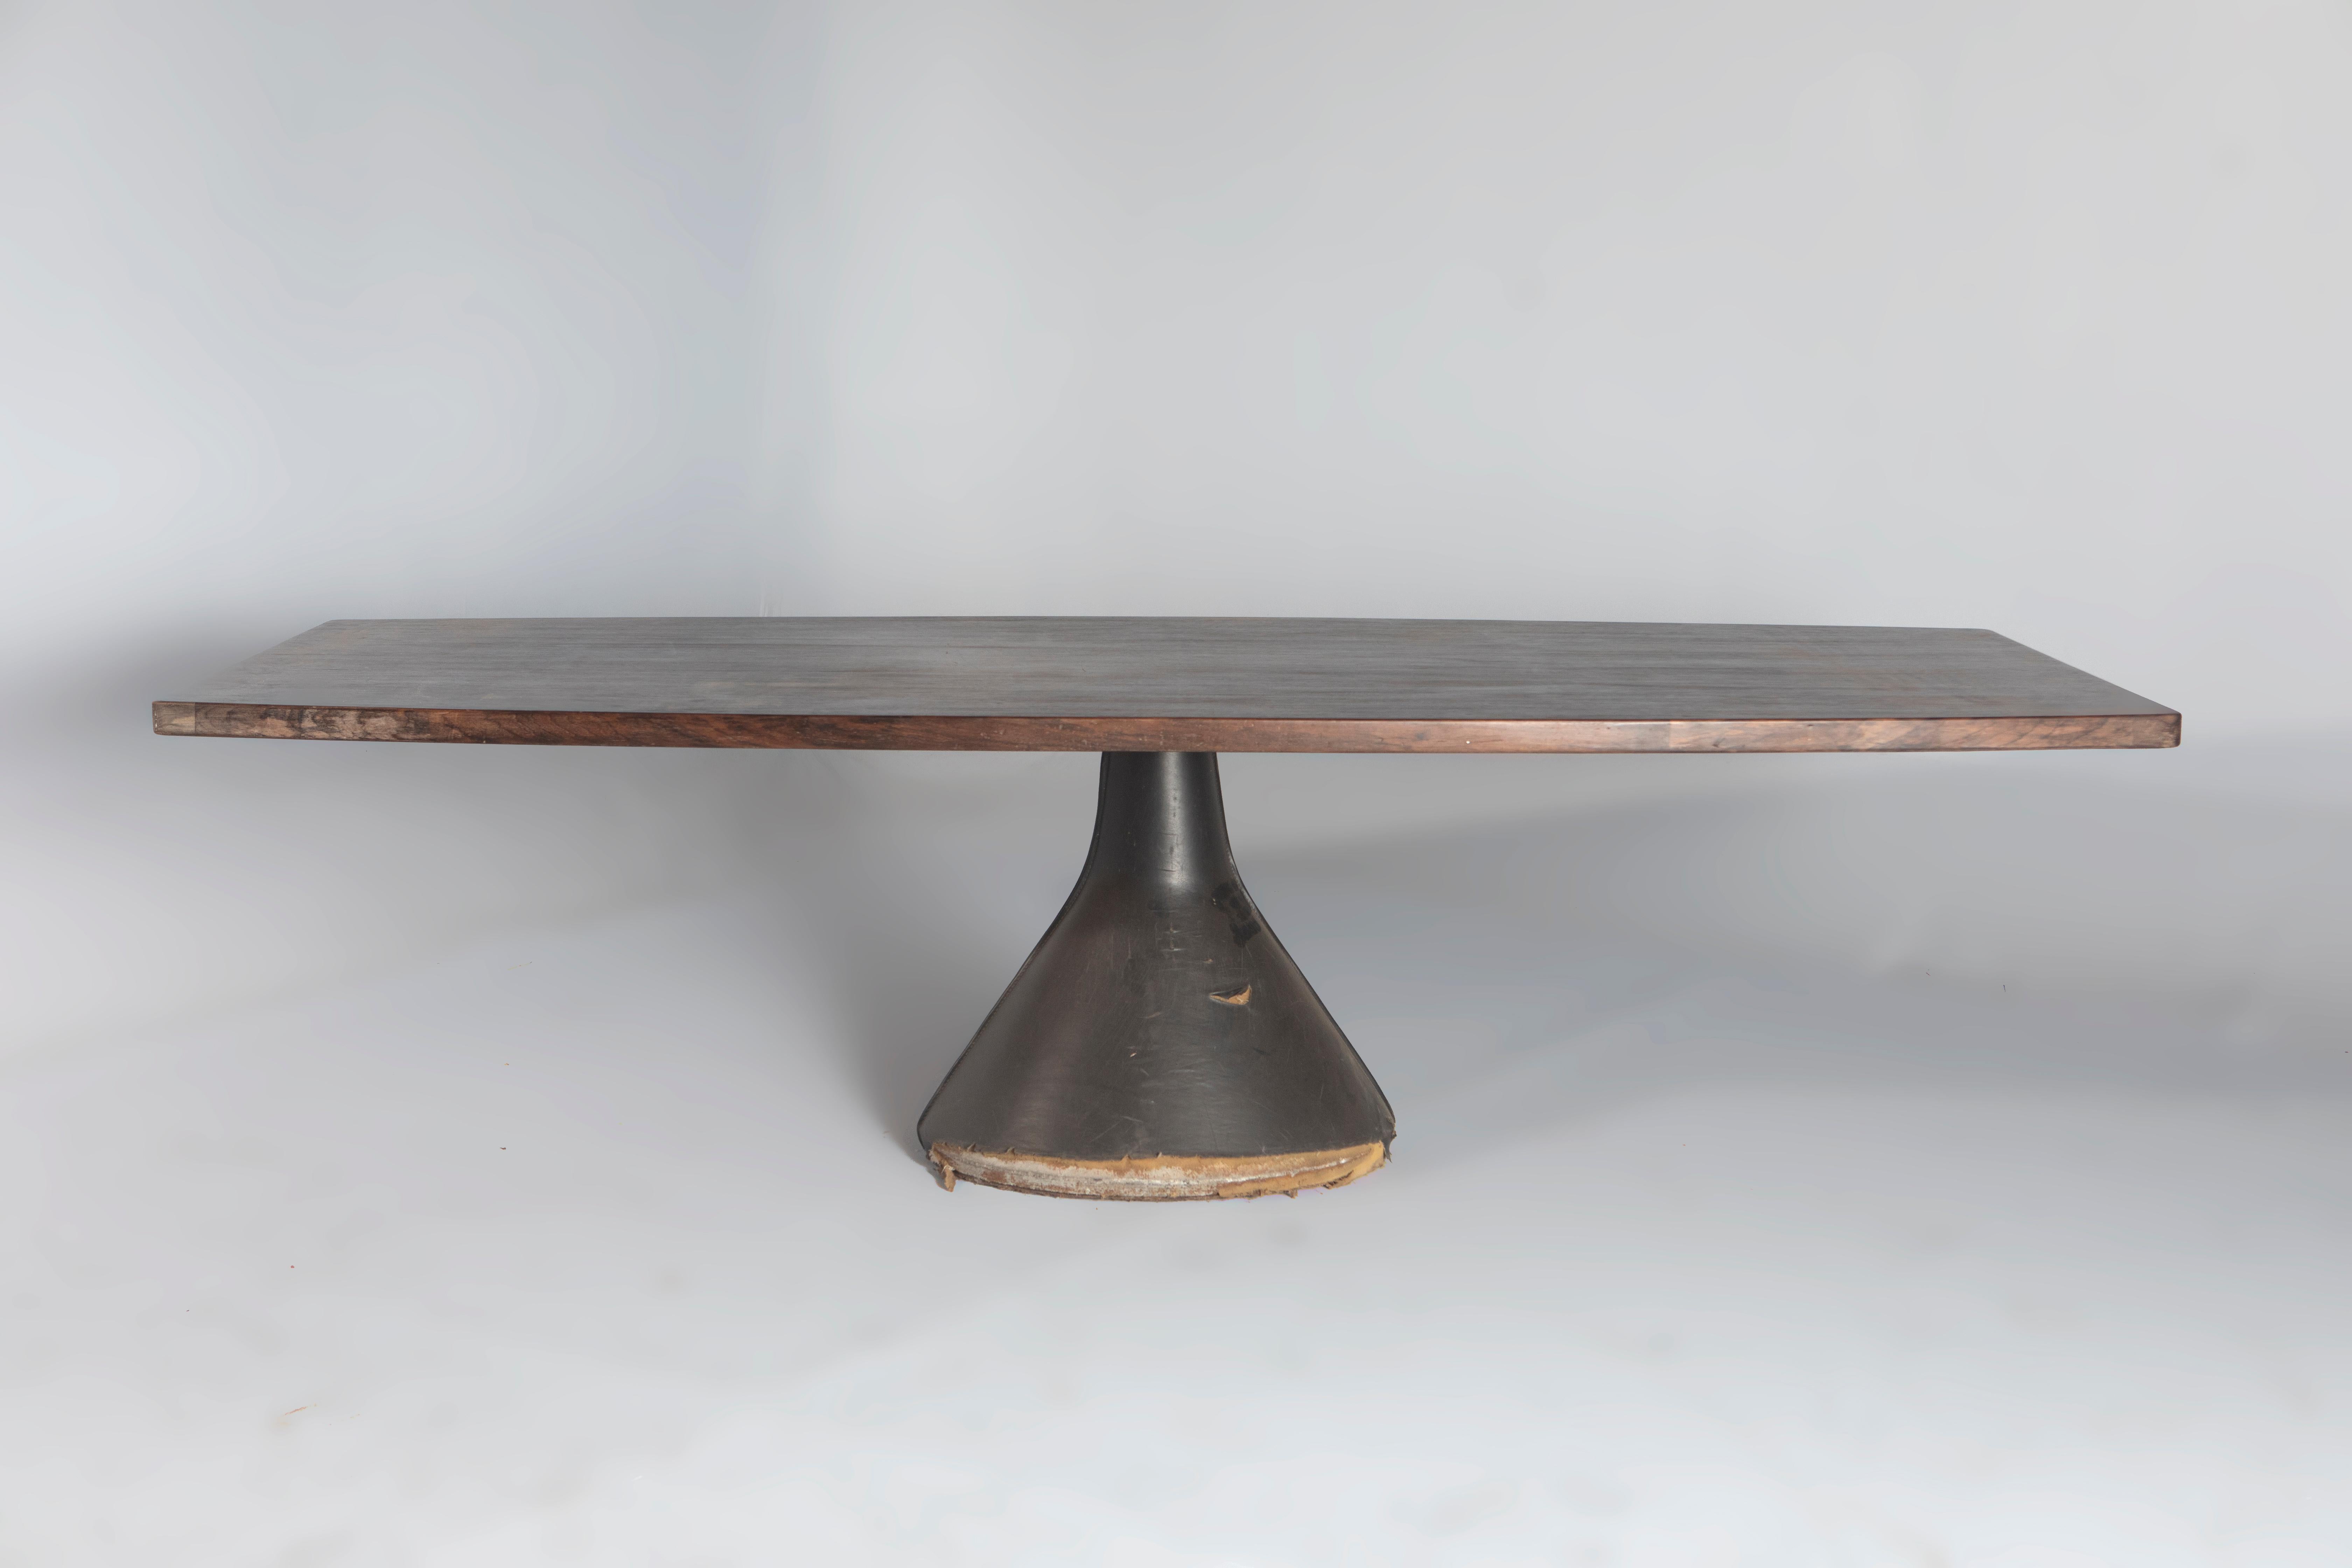 Table Guanabara moderne du milieu du siècle par Jorge Zalszupin, Brésil, années 1960

L'emblématique Guanabara est une table conçue par Jorge Zalszupin et produite par son entreprise, L'atelier.
Le plateau de la table est en placage de bois, ce qui